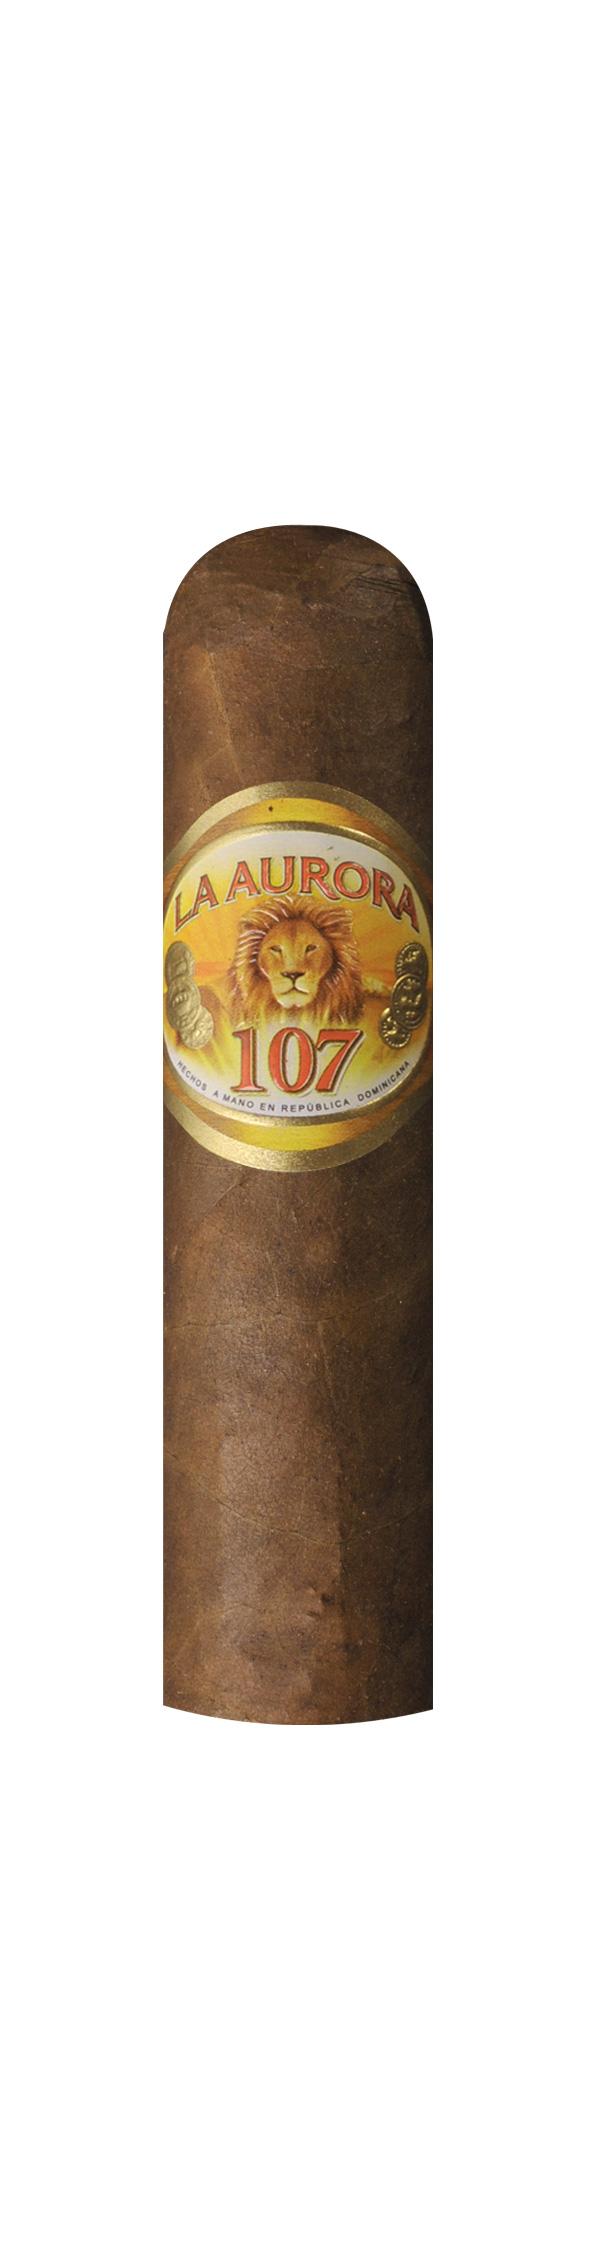 Aurora Zigarren 1495 Sumo Short Robusto 1 Packung